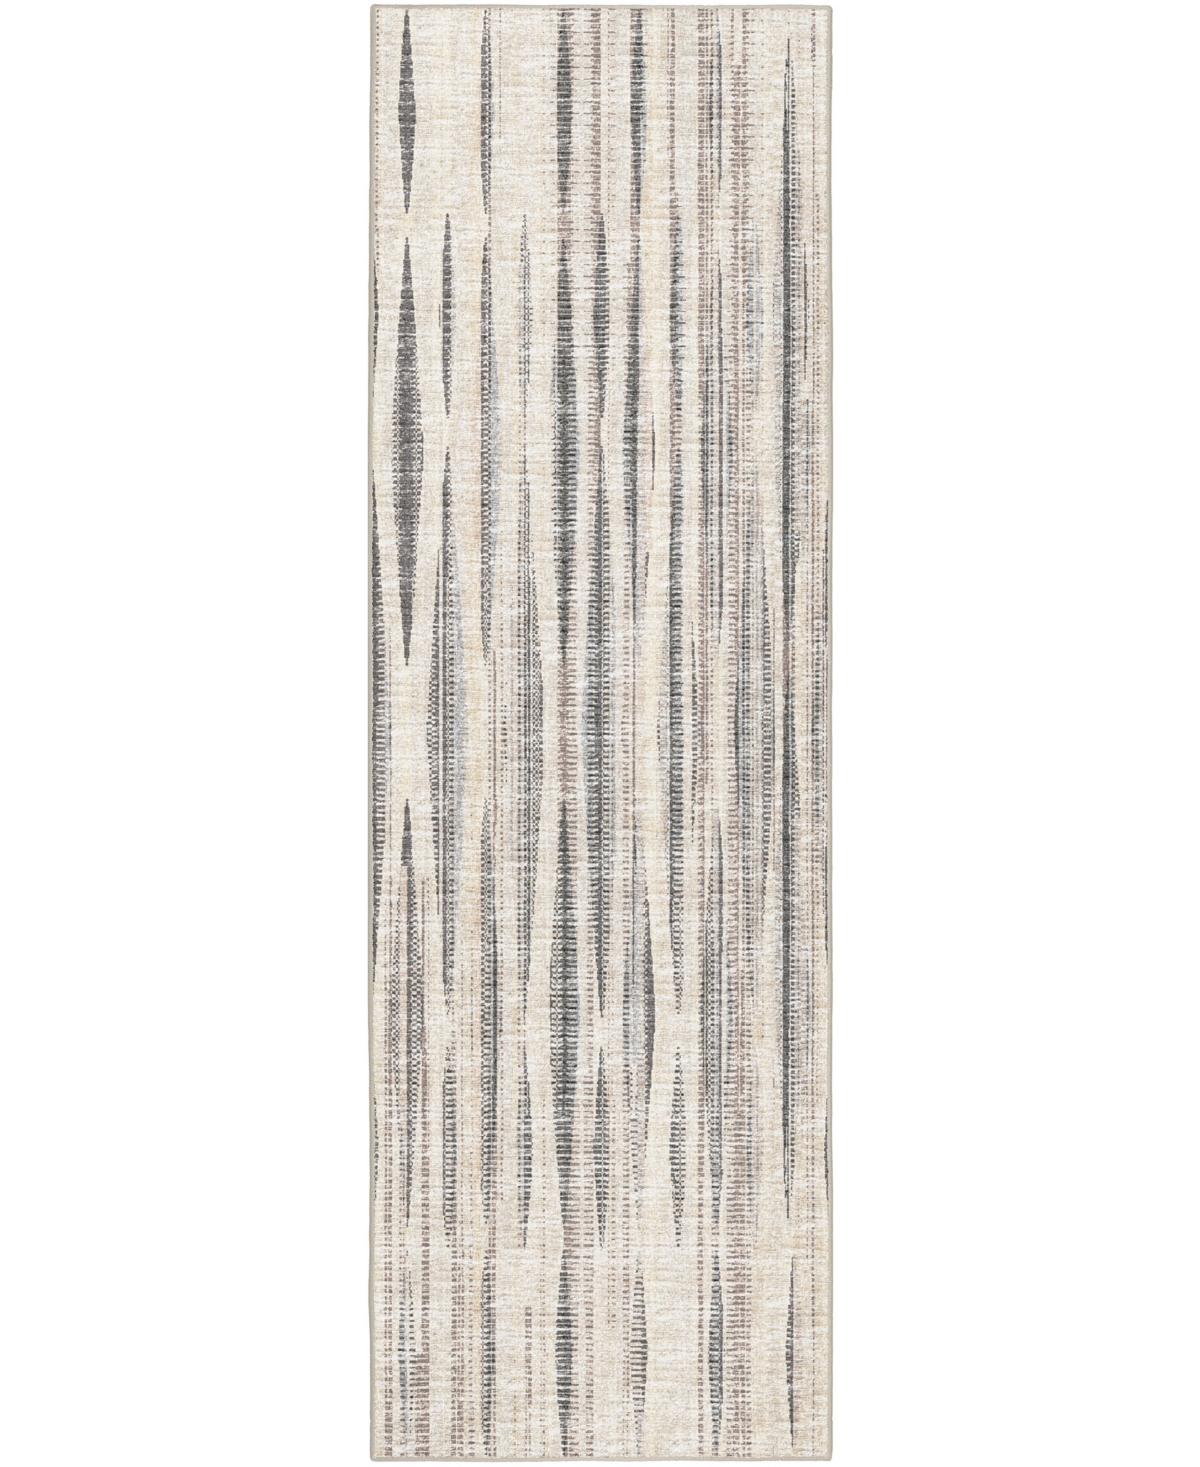 D Style Sutter Stt-1 2'6" X 8' Runner Area Rug In Ivory